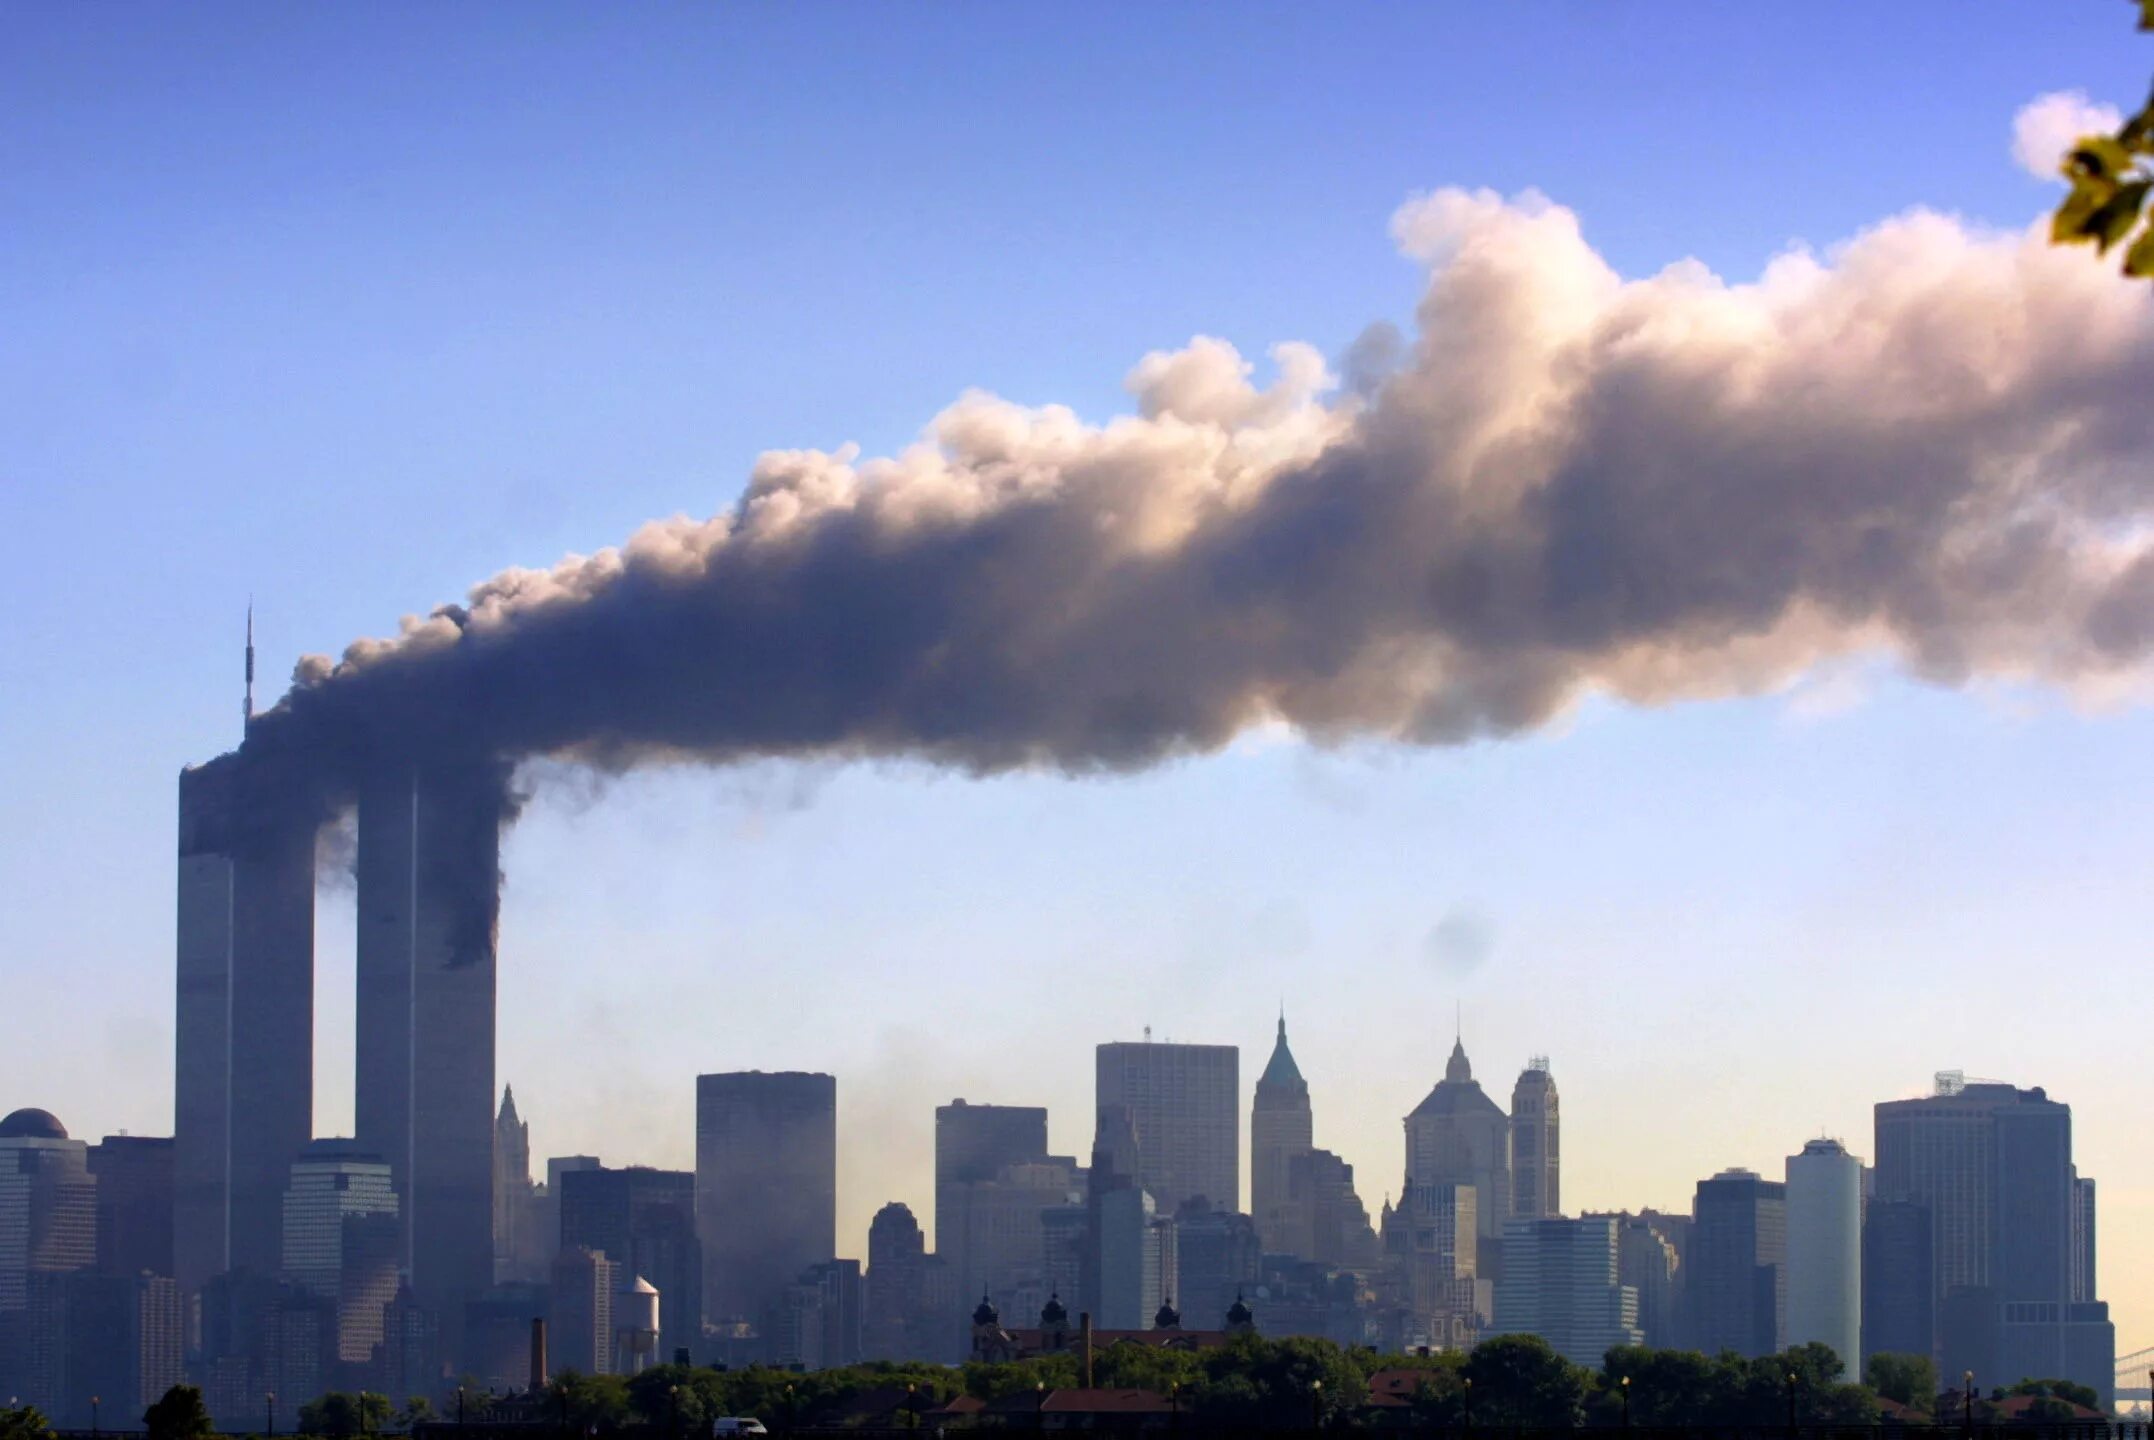 11 сентября 2023 год. Башни Близнецы 11 сентября. ВТЦ Нью-Йорк башни Близнецы. Нью-Йорк, Манхэттен, 11 сентября 2001 года.